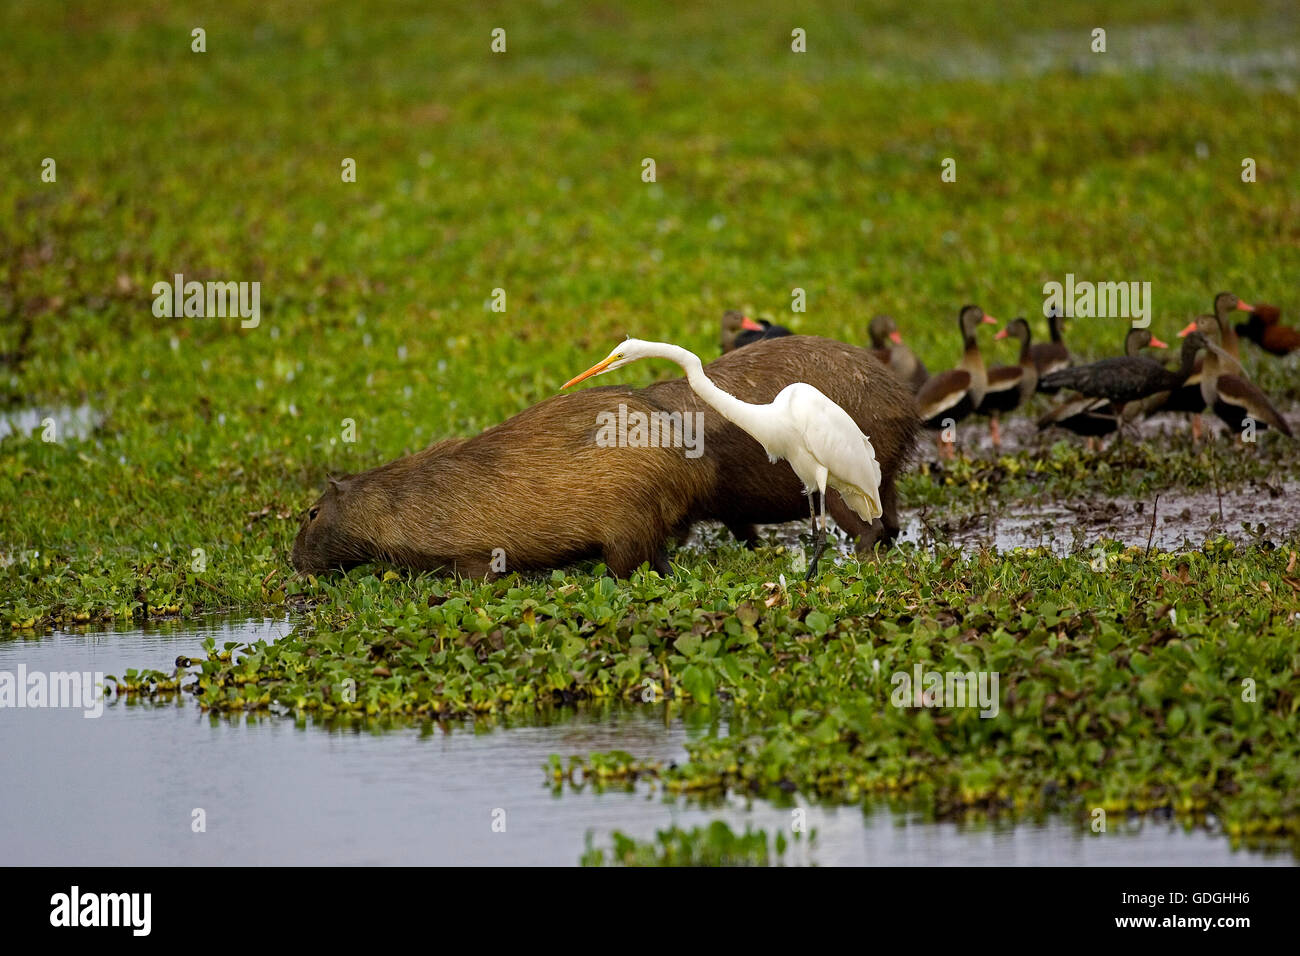 Silberreiher, Egretta Alba und Capybara, Hydrochoerus Hydrochaeris, im Sumpf, Los Lianos in Venezuela Stockfoto